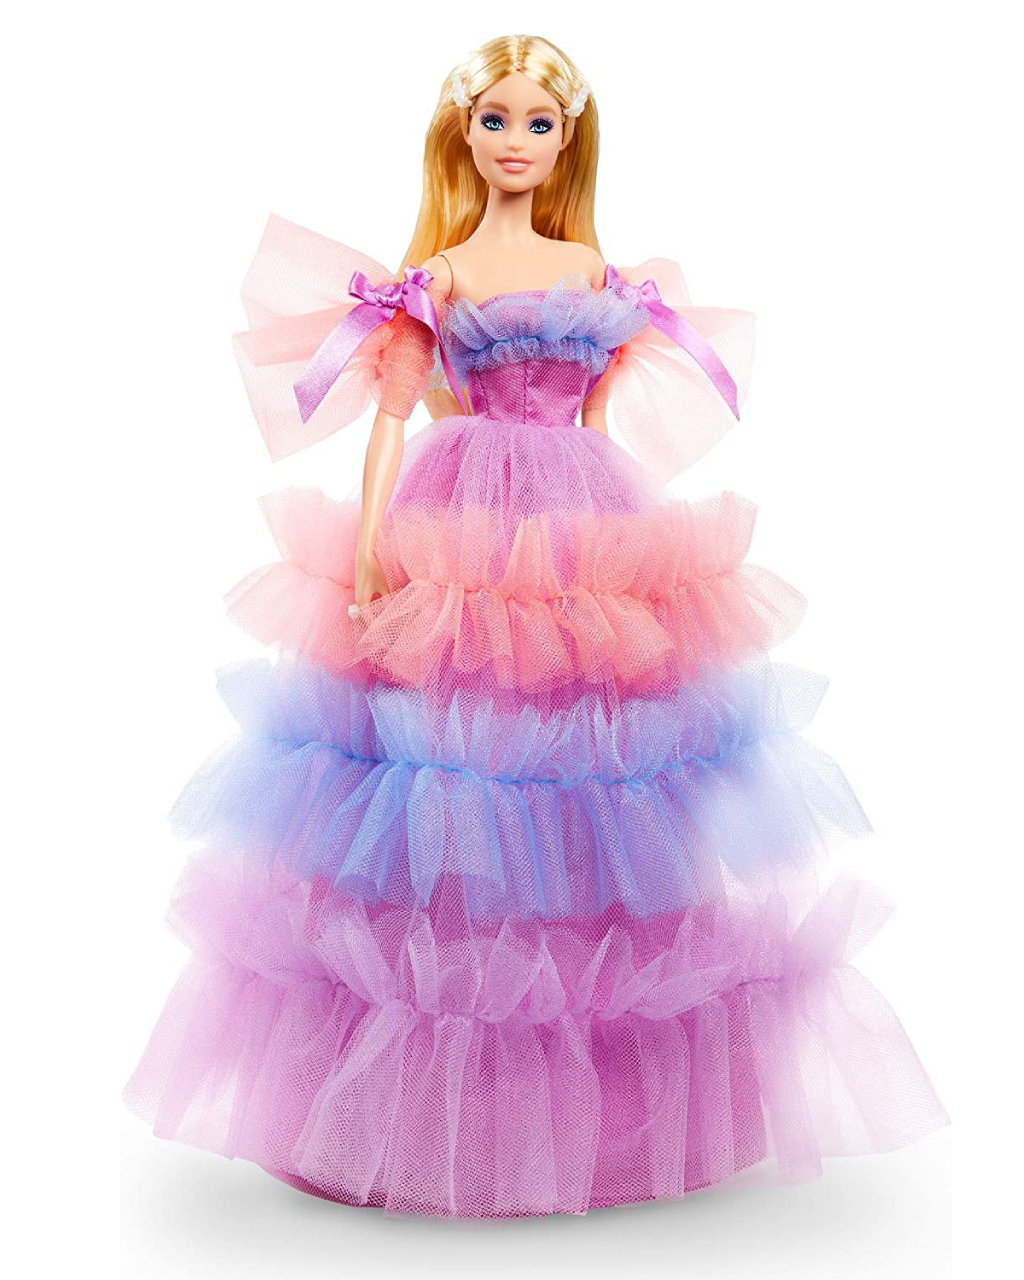 Barbie Birthday wishes 2021